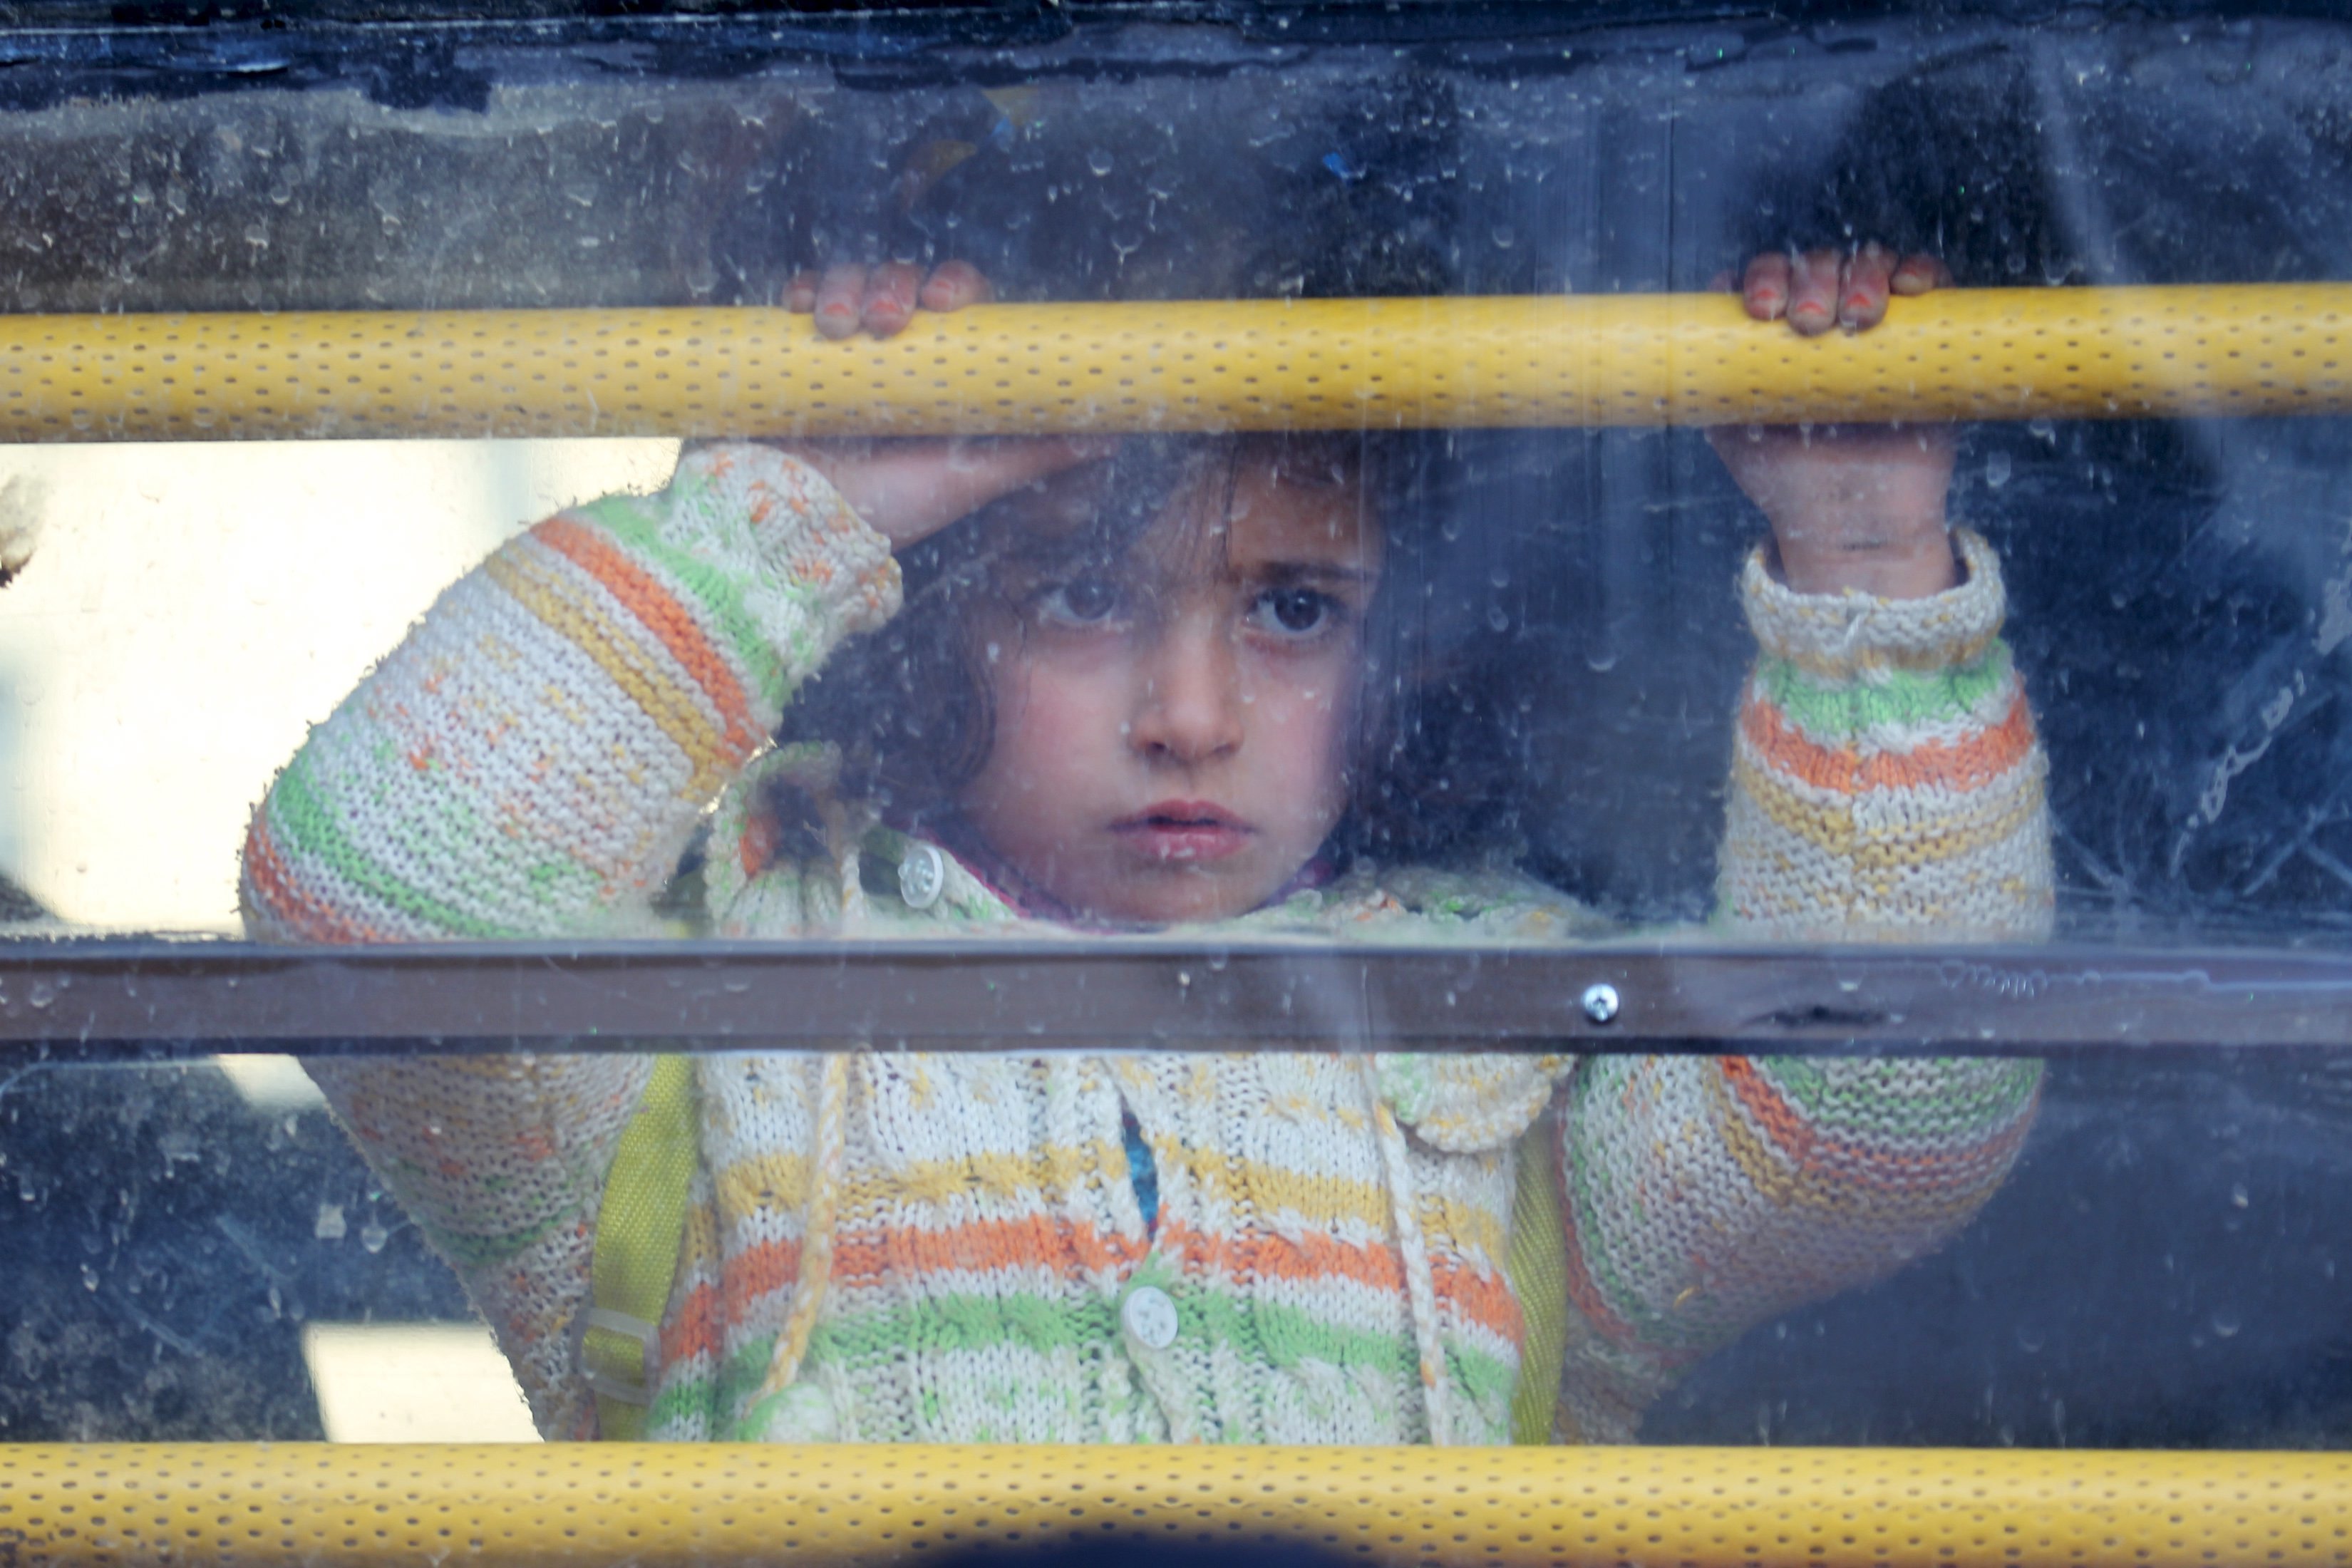  60% de civiles que huyeron de Alepo son niños: UNICEF